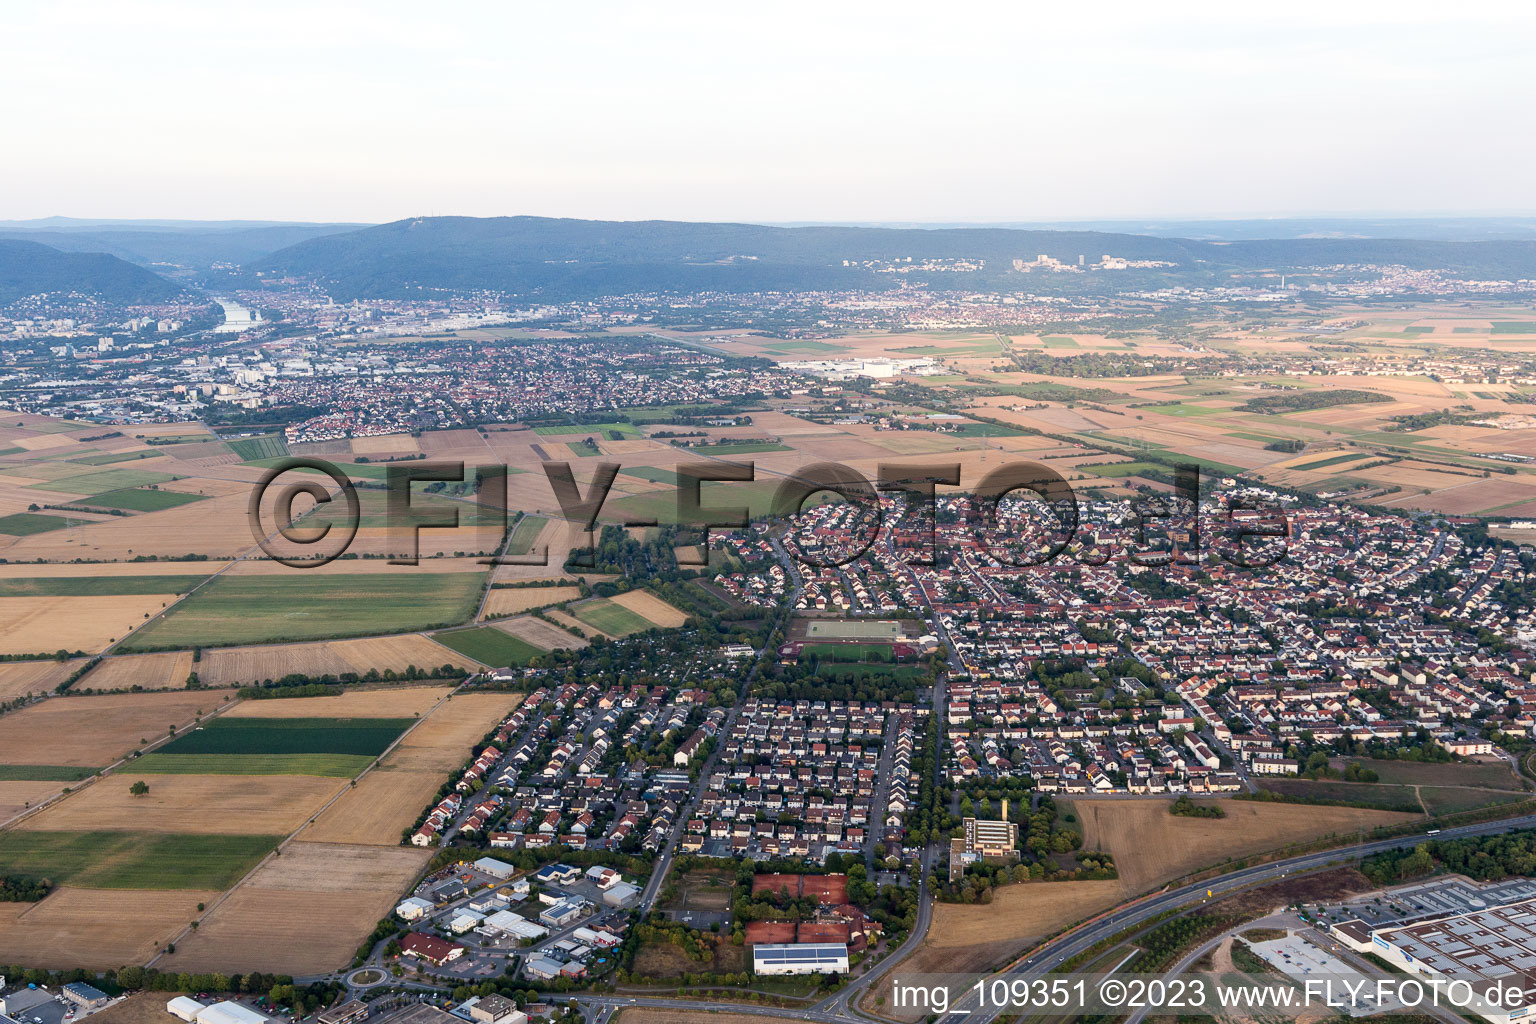 Plankstadt im Bundesland Baden-Württemberg, Deutschland aus der Drohnenperspektive